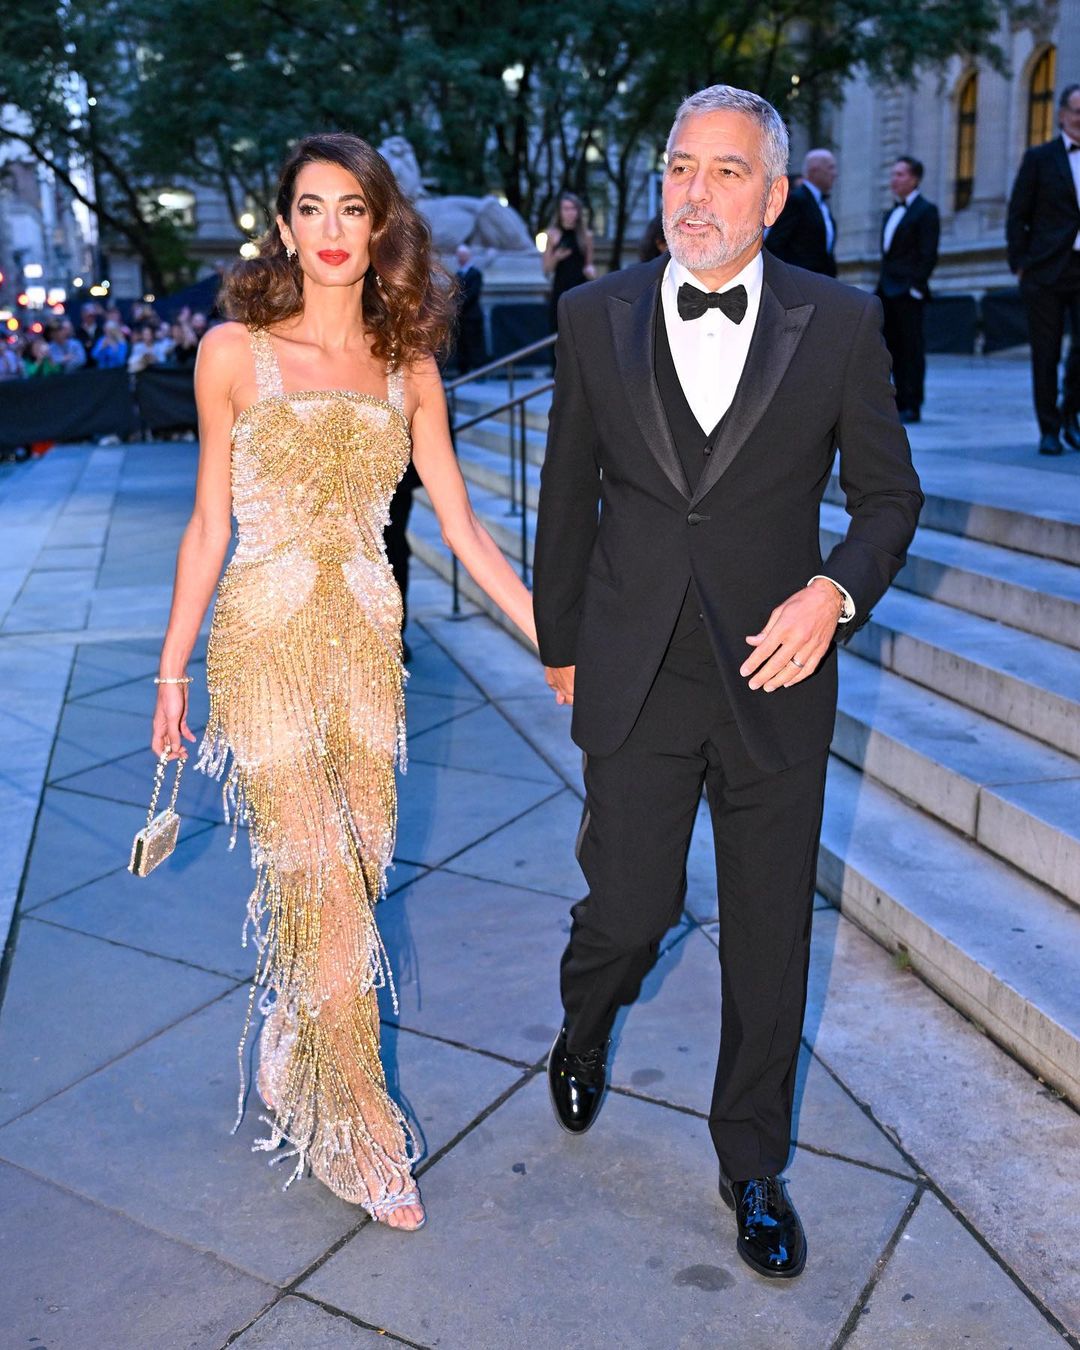 В стиле 20-х годов: жена Джорджа Клуни в золотом платье с бахромой устроила вечеринку в Нью-Йорке